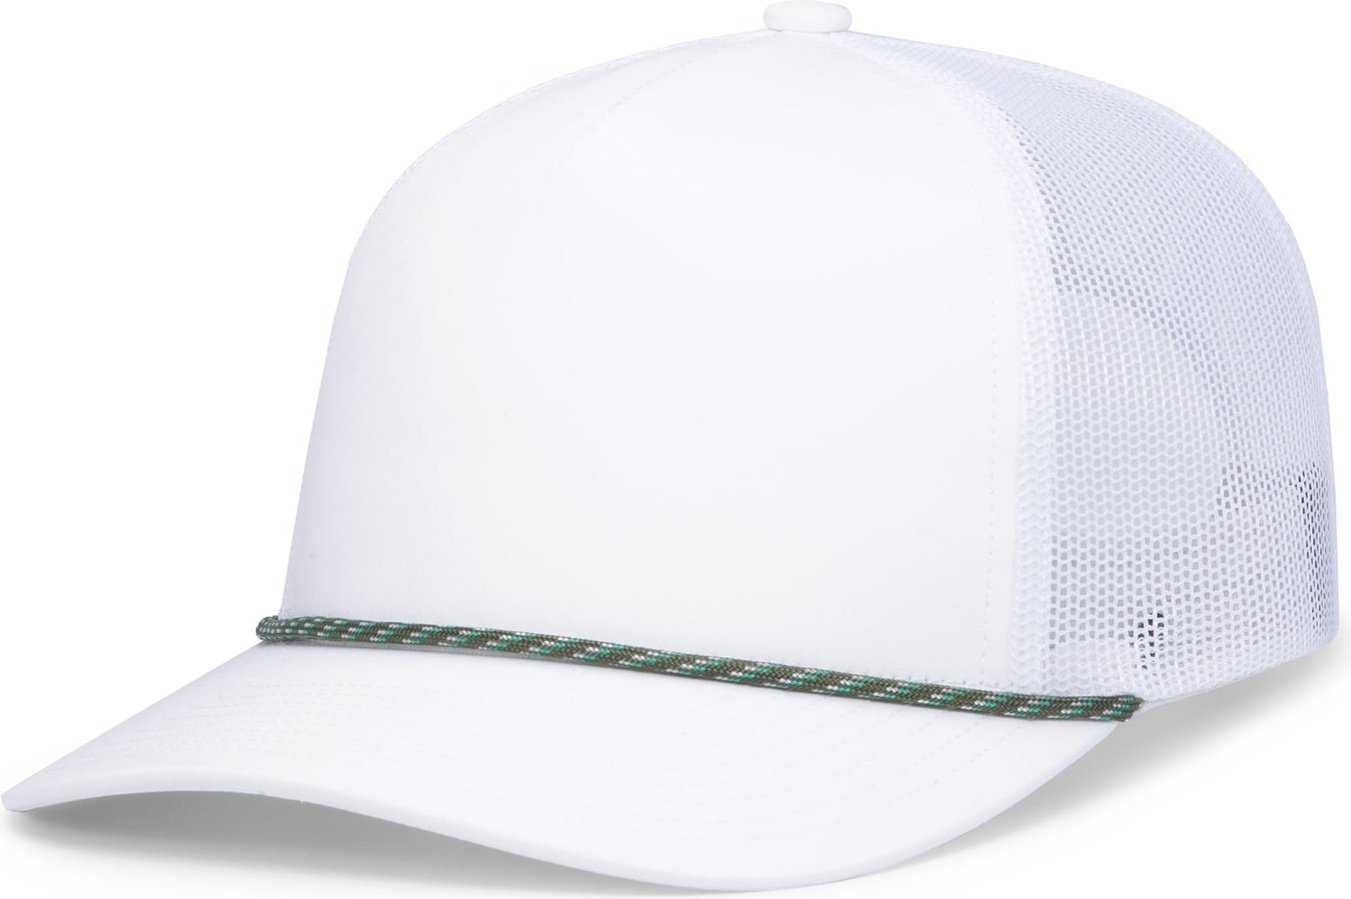 Pacific Headwear P423 Weekender Trucker Cap - White Ginko - HIT a Double